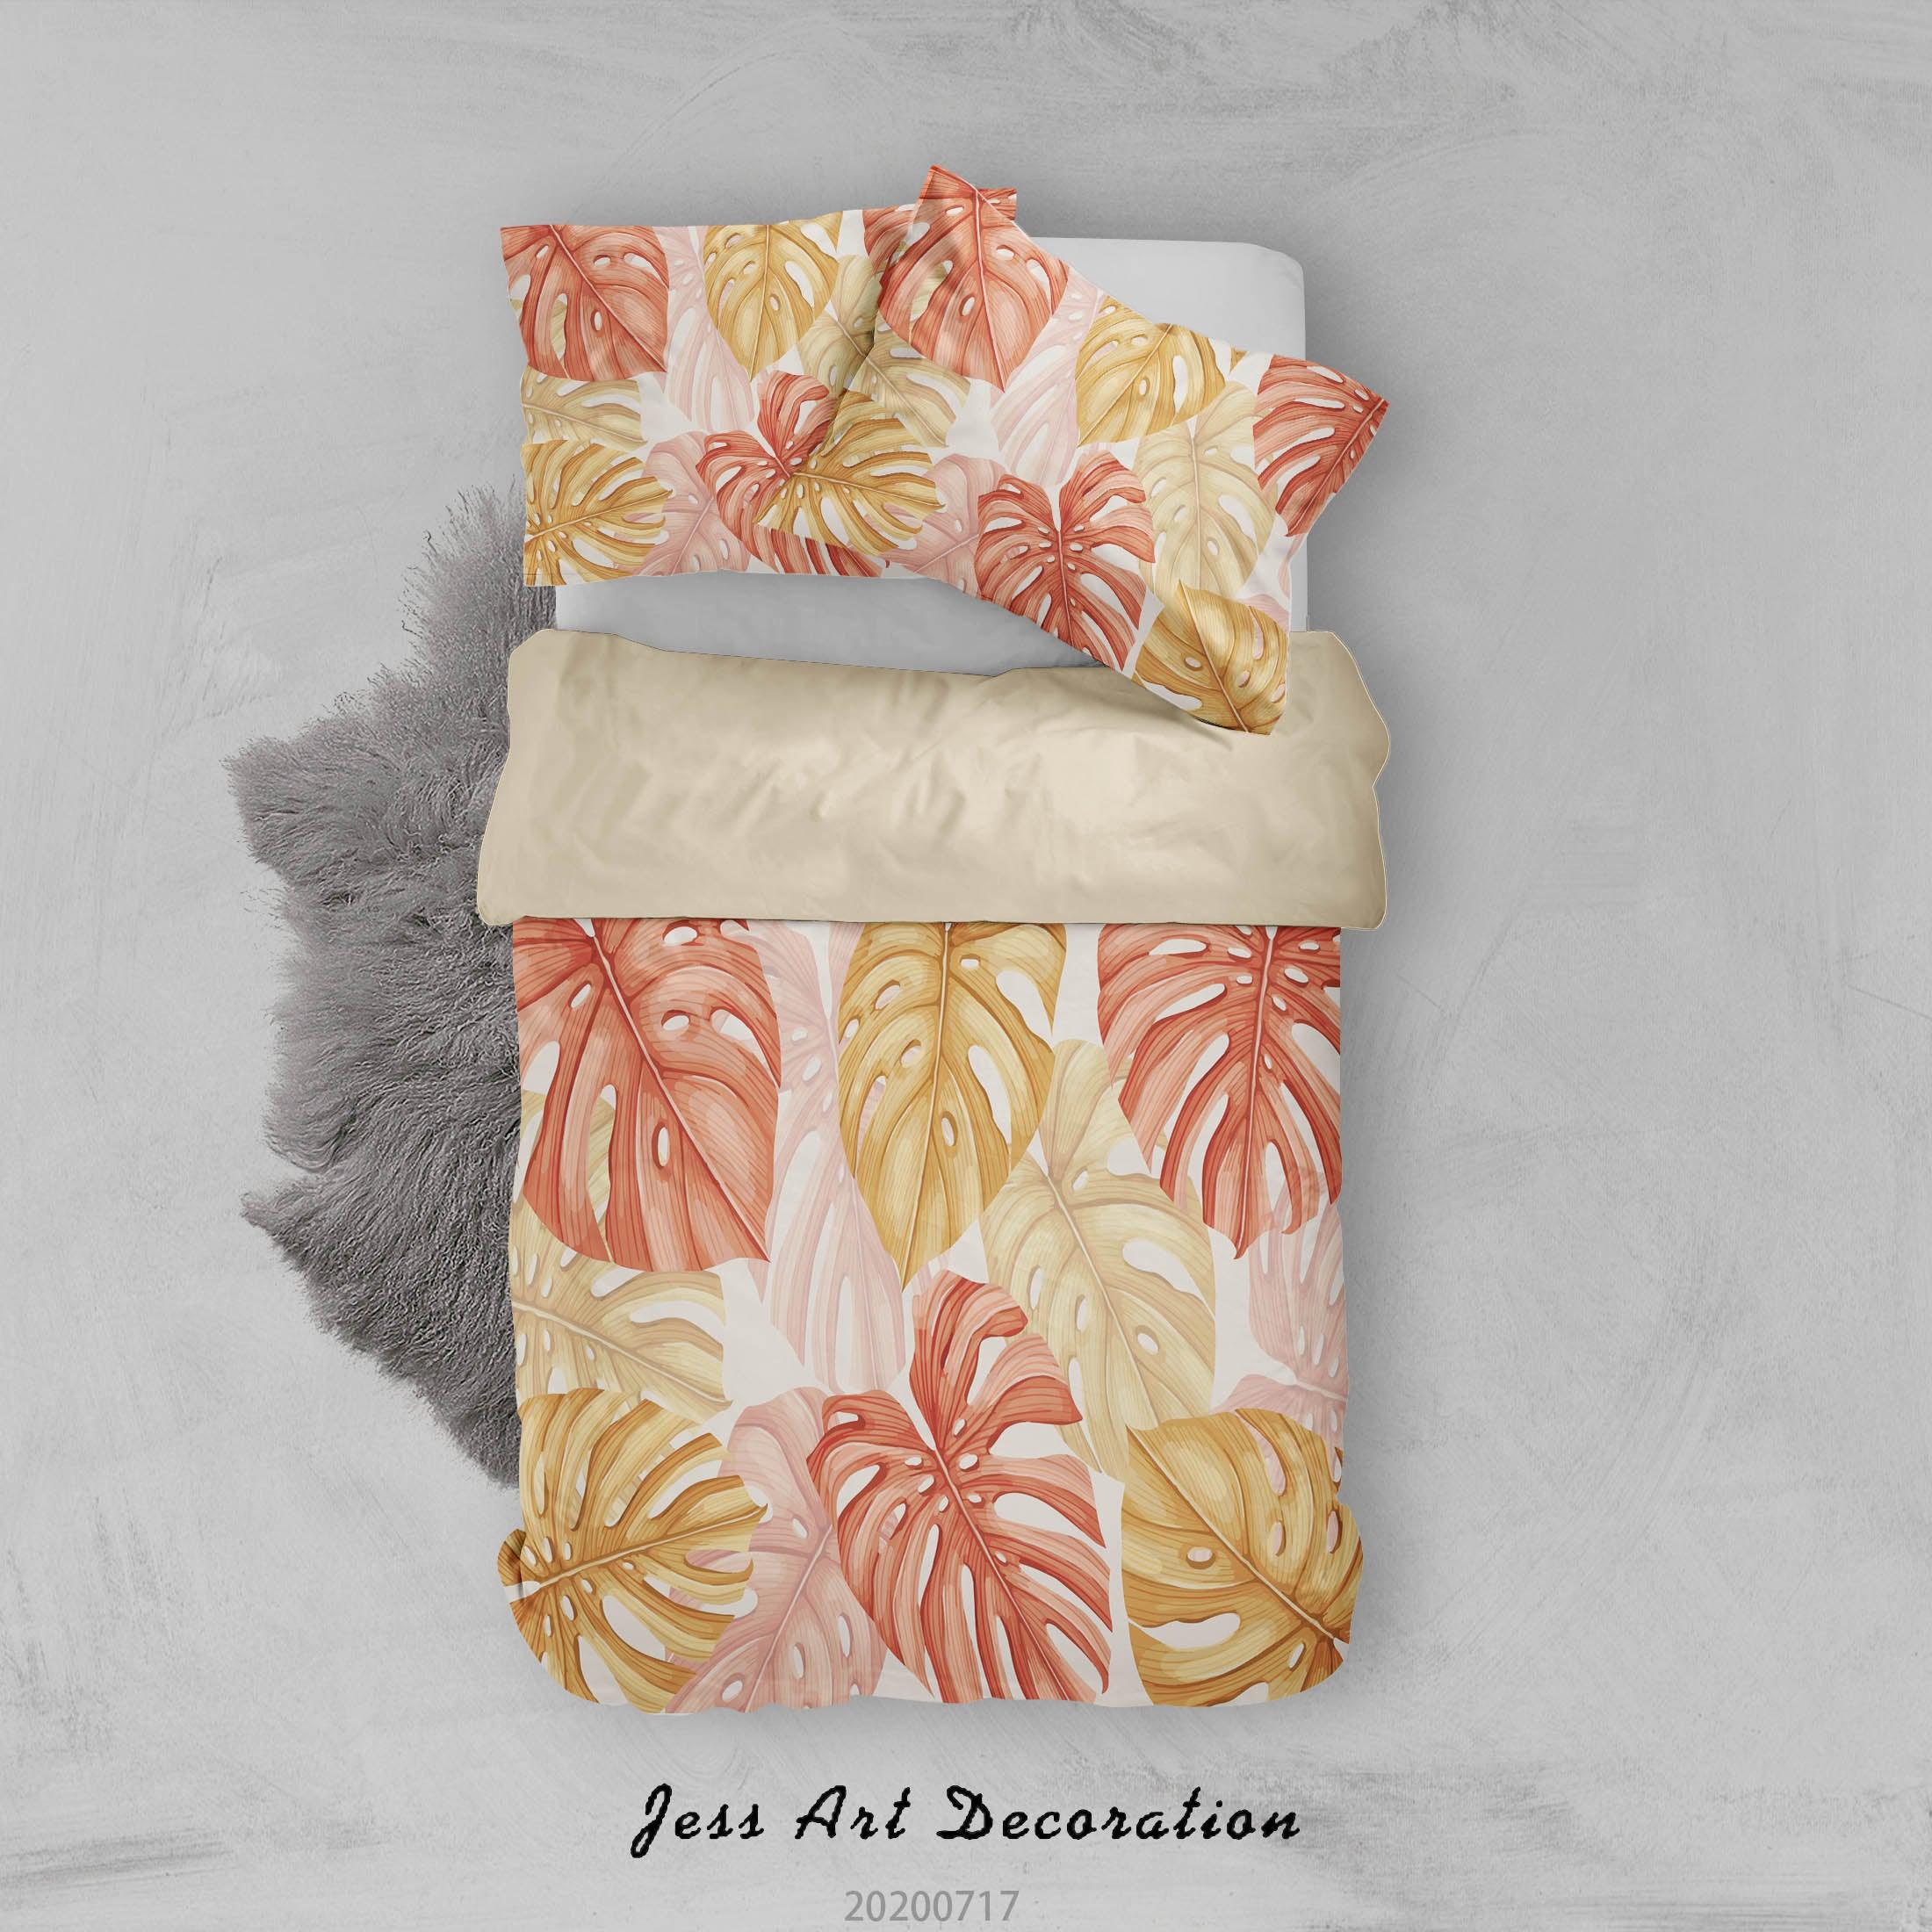 3D Vintage Floral Quilt Cover Set Bedding Set Duvet Cover Pillowcases WJ 1615- Jess Art Decoration